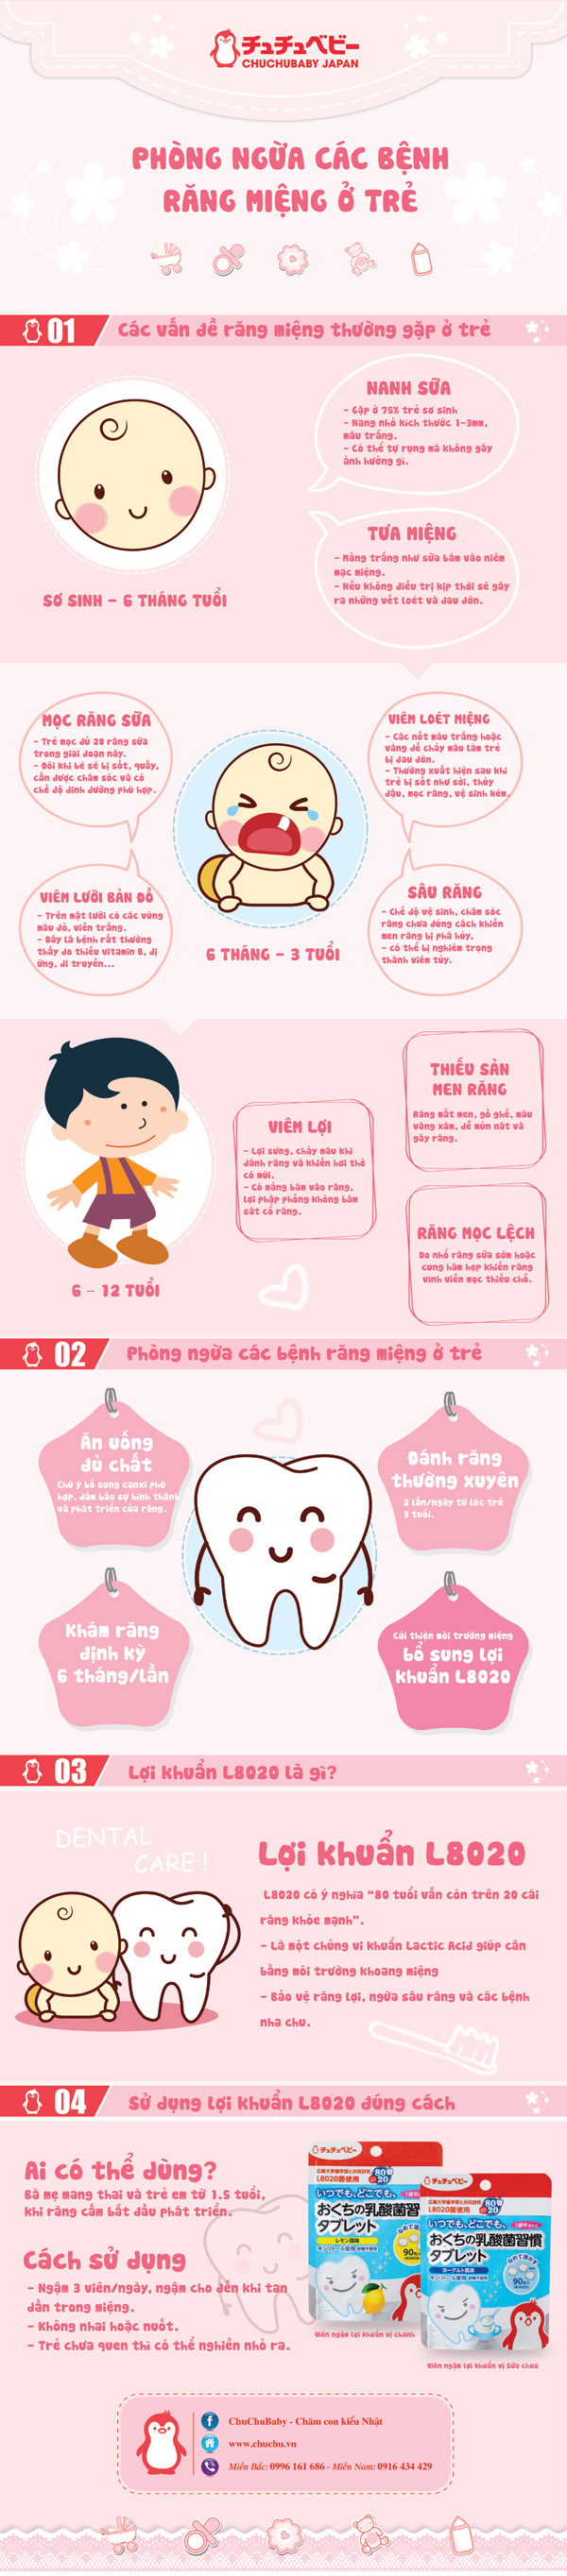 [Infographic] Phòng ngừa các bệnh răng miệng ở trẻ